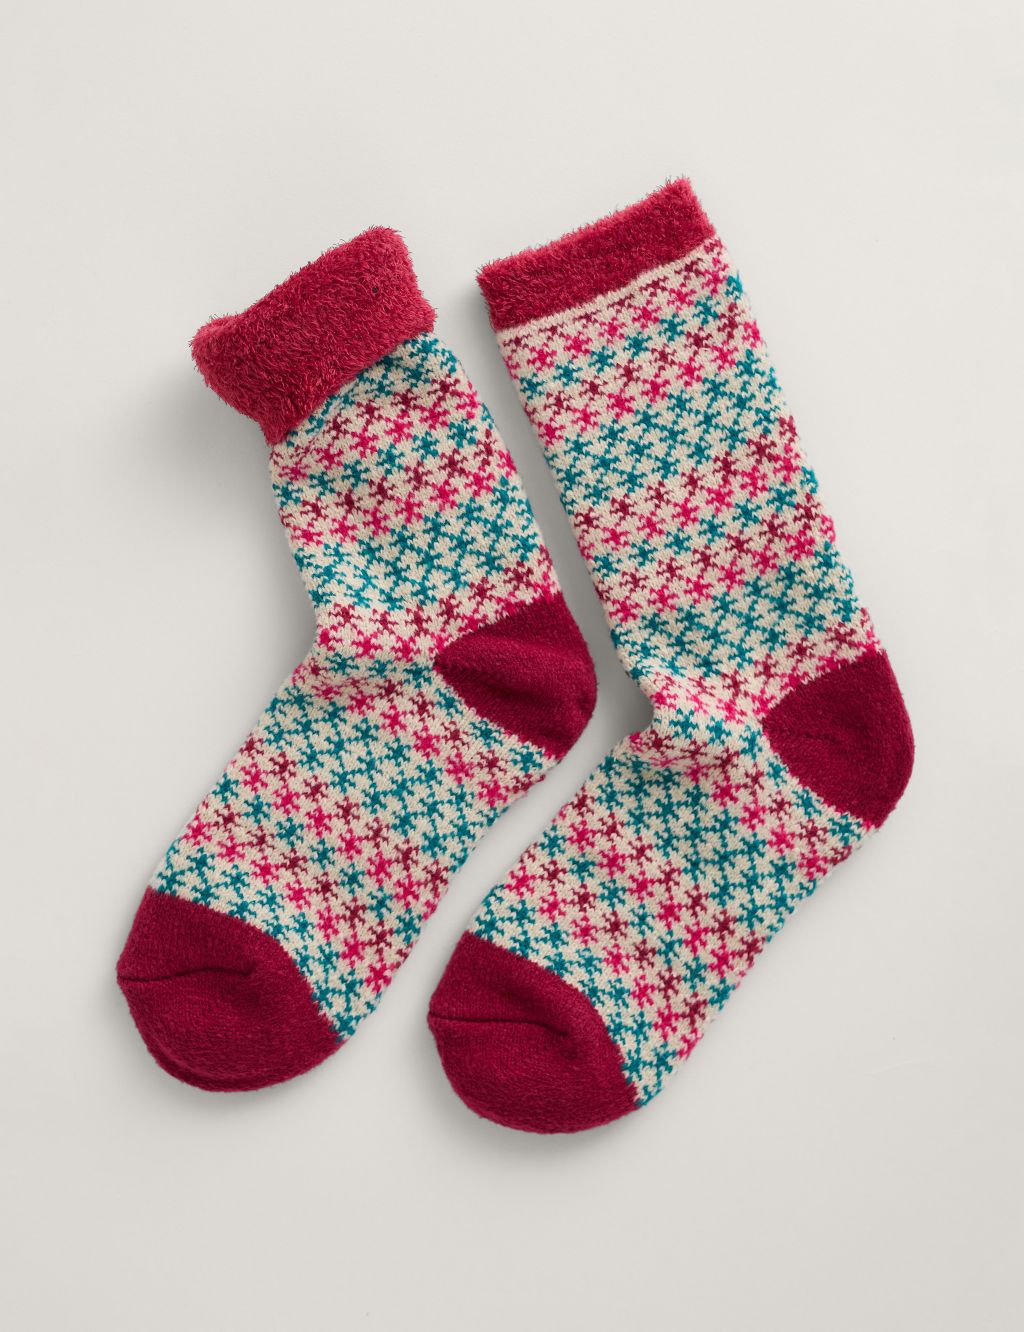 Patterned Ankle High Socks image 1